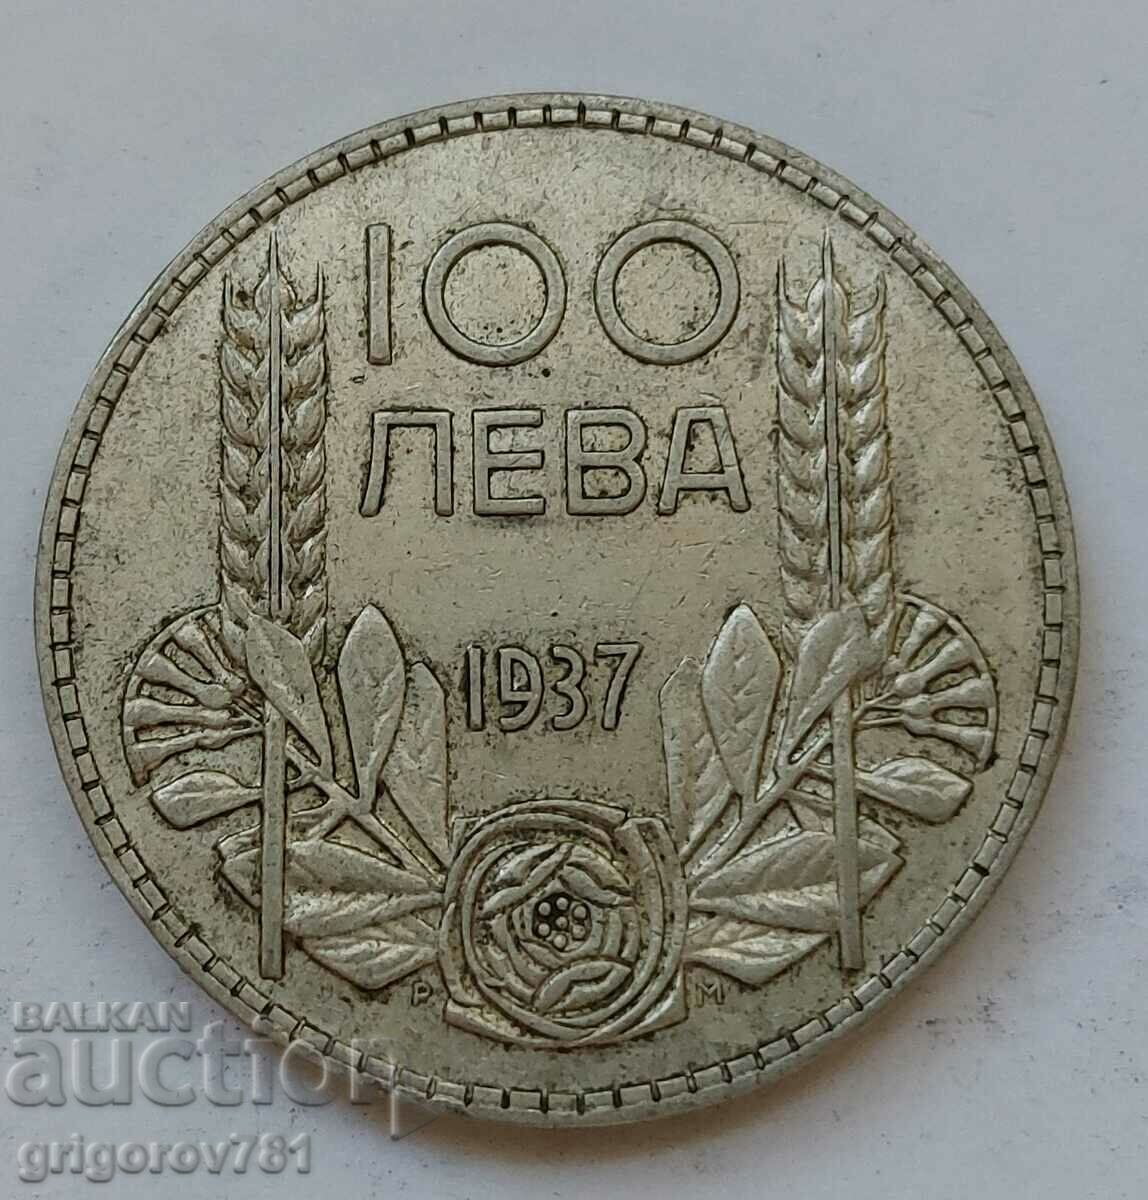 Ασήμι 100 λέβα Βουλγαρία 1937 - ασημένιο νόμισμα #134